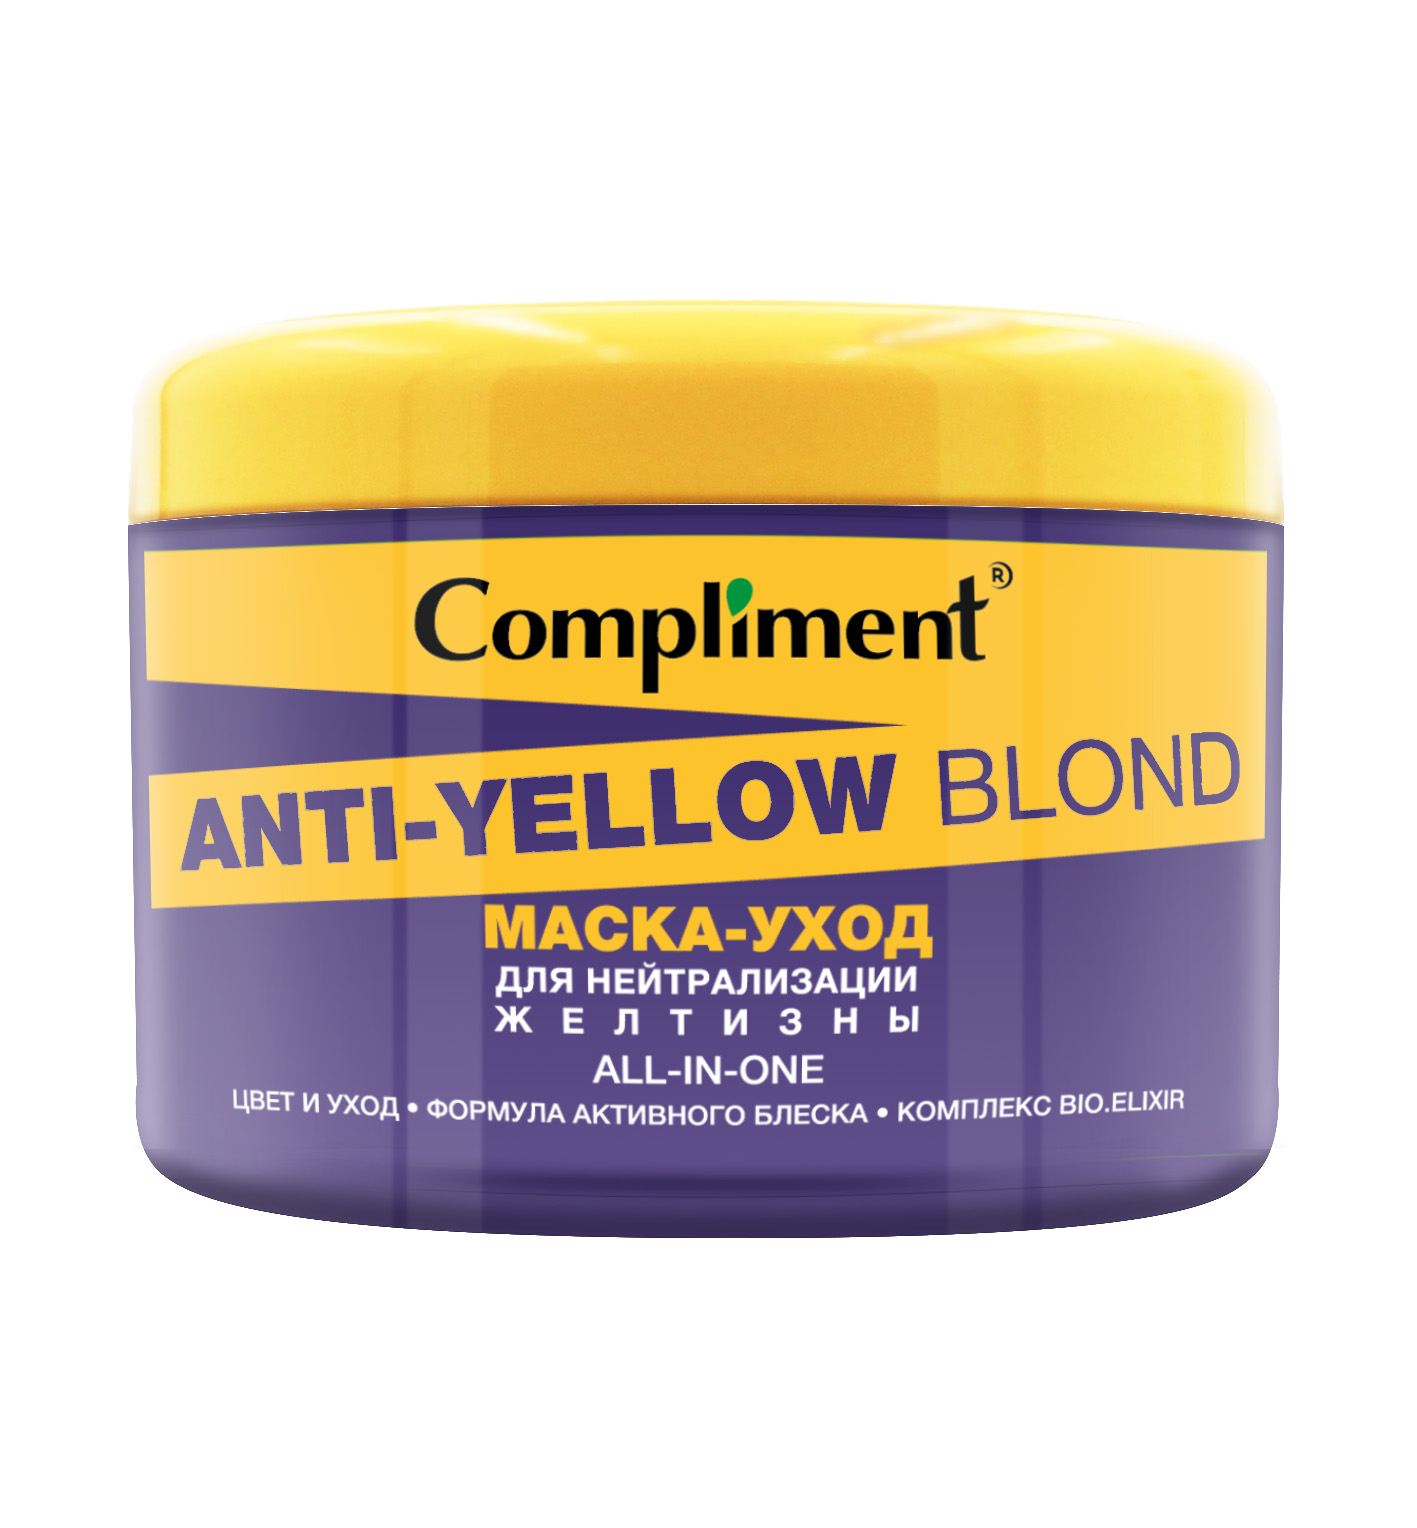 Маска для волос clean anti yellow. Compliment Anti-Yellow blond. Compliment маска нейтрализатор желтизны. Маска-уход для нейтрализации желтизны compliment Anti-Yellow blond, 500 мл. Маска для волос комплимент.